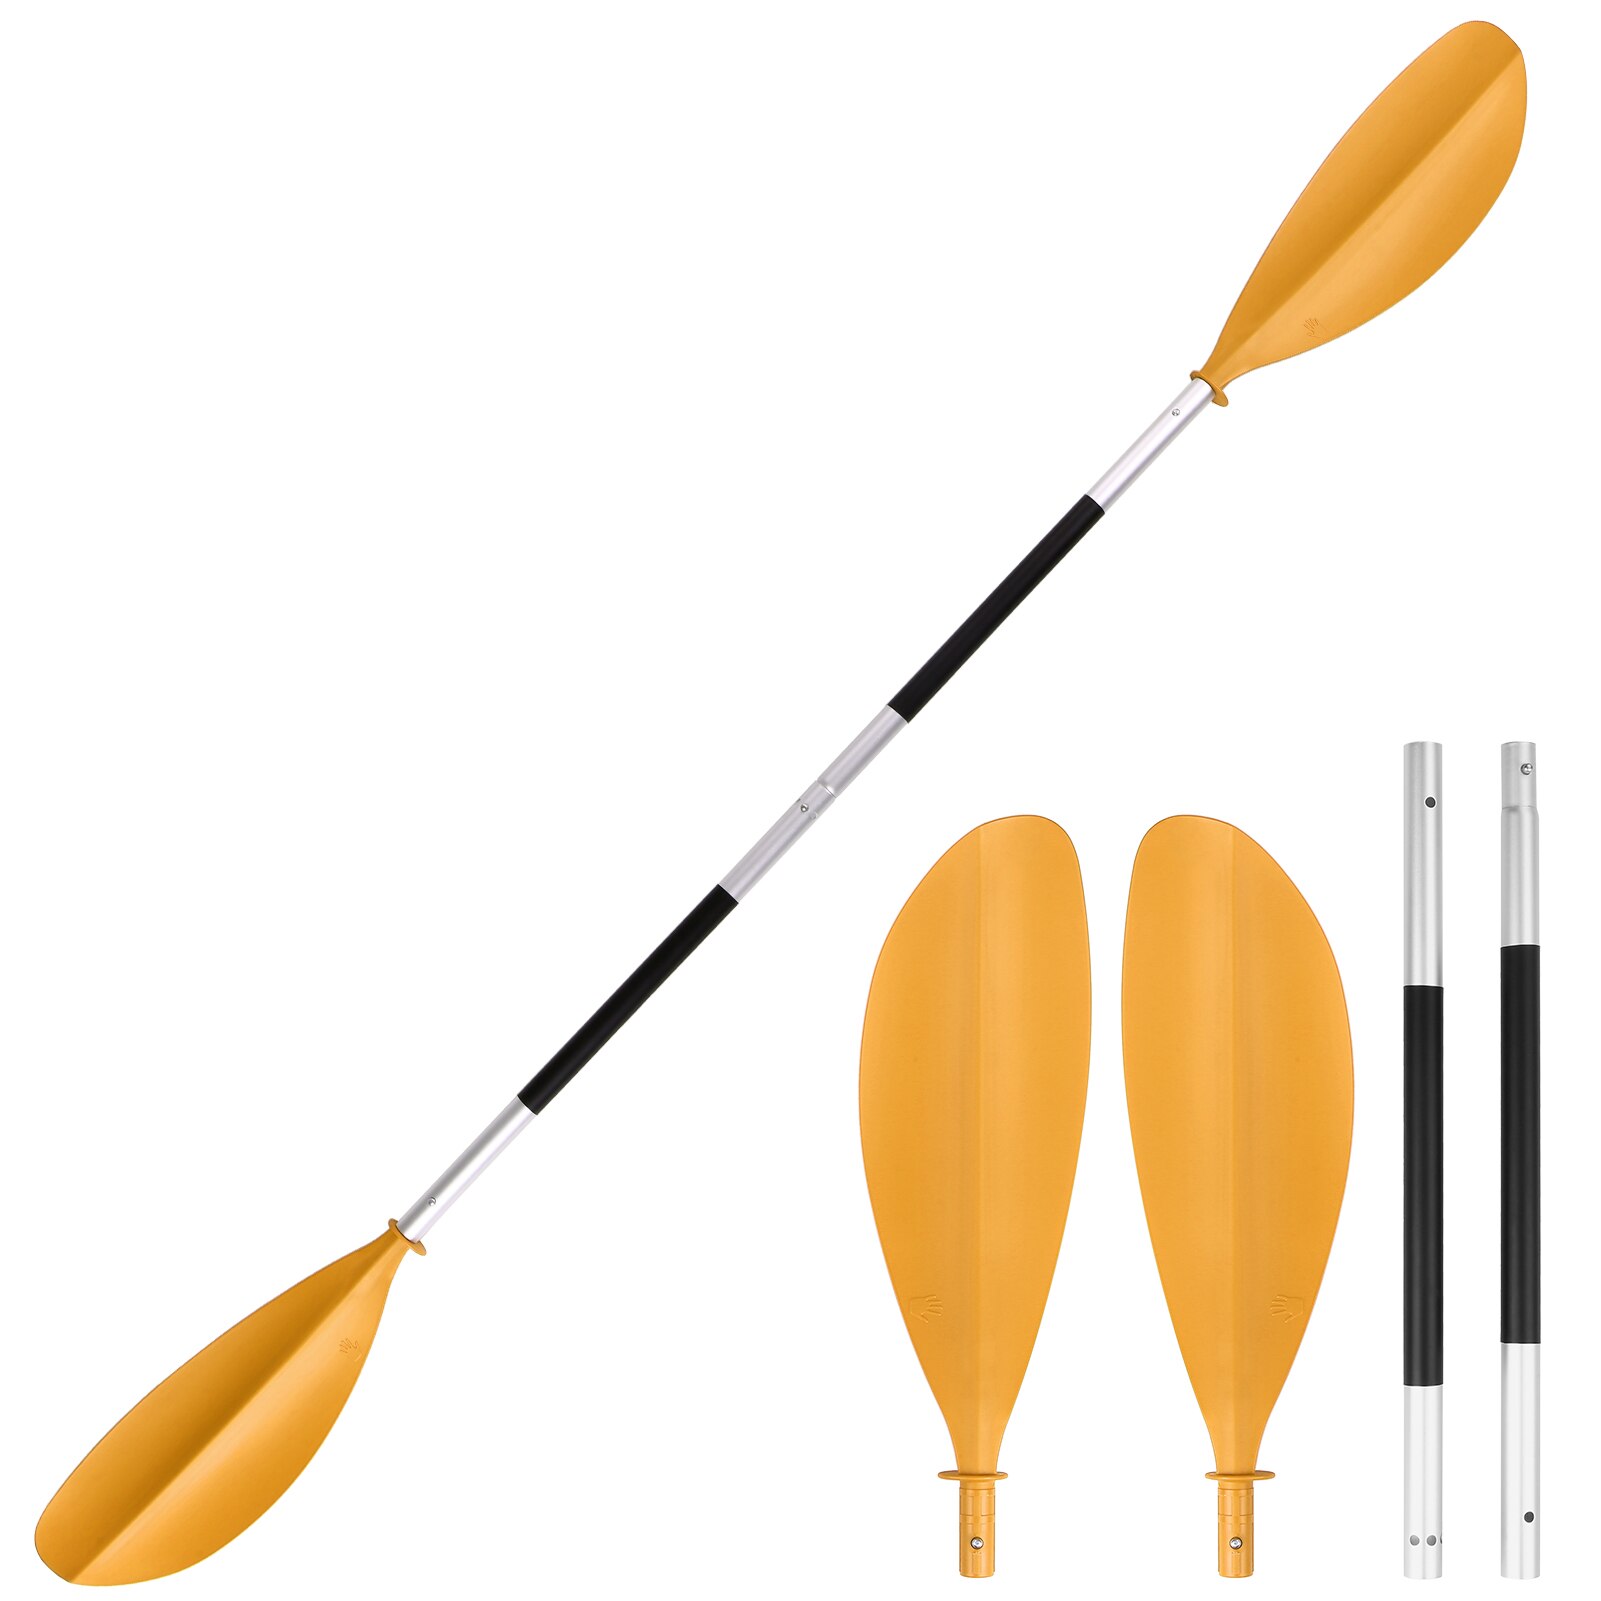 Planche de Kayak asymétrique à dégagement rapide, planche de Paddle gonflable pour bateau, Stand Up pour surf, 4 pièces: Yellow